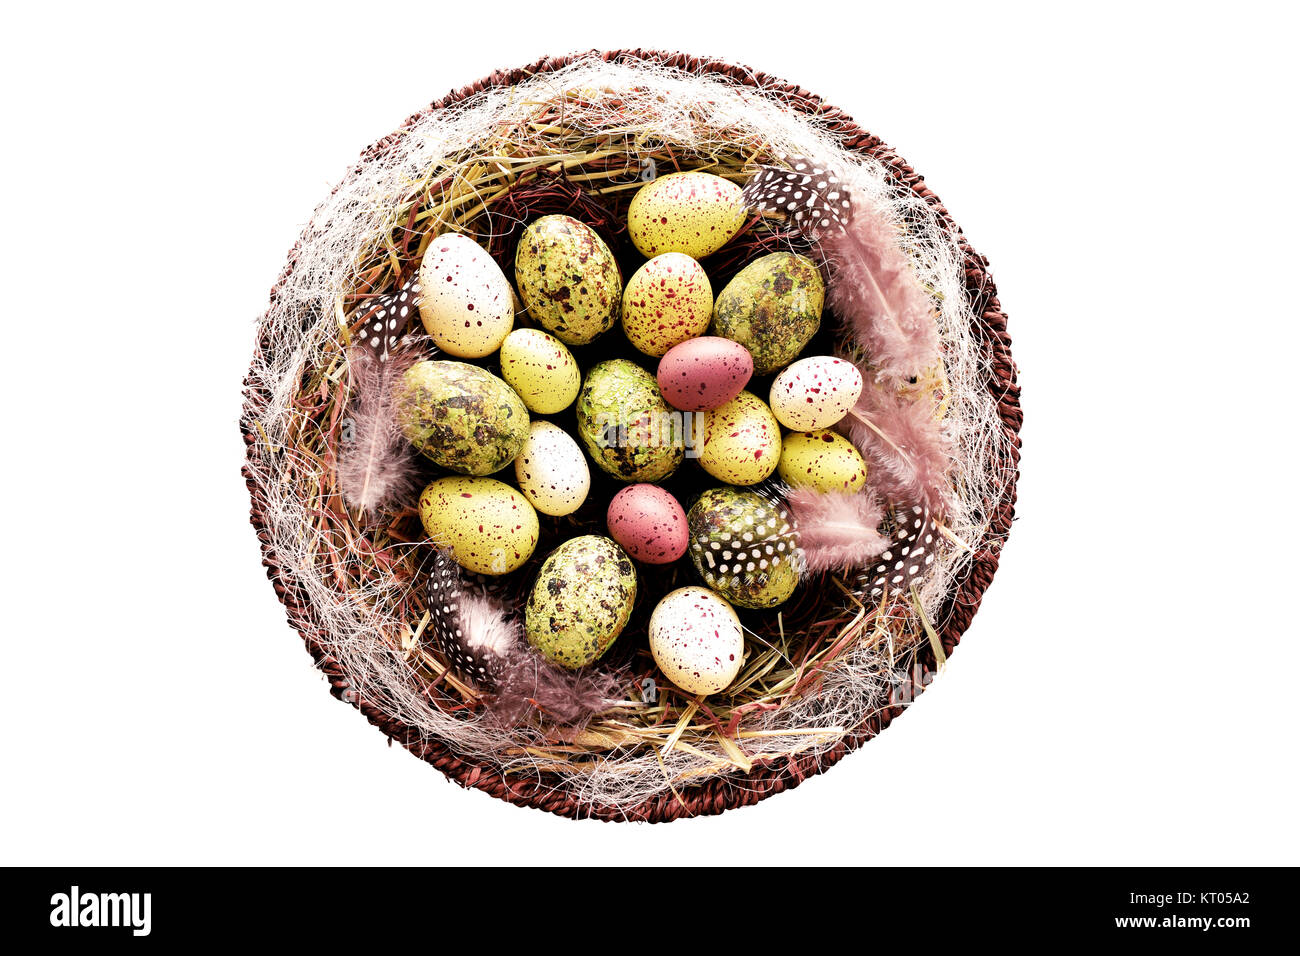 Dekorative Ostereier im Korb mit Heu und Perlhühner Federn Stockfoto